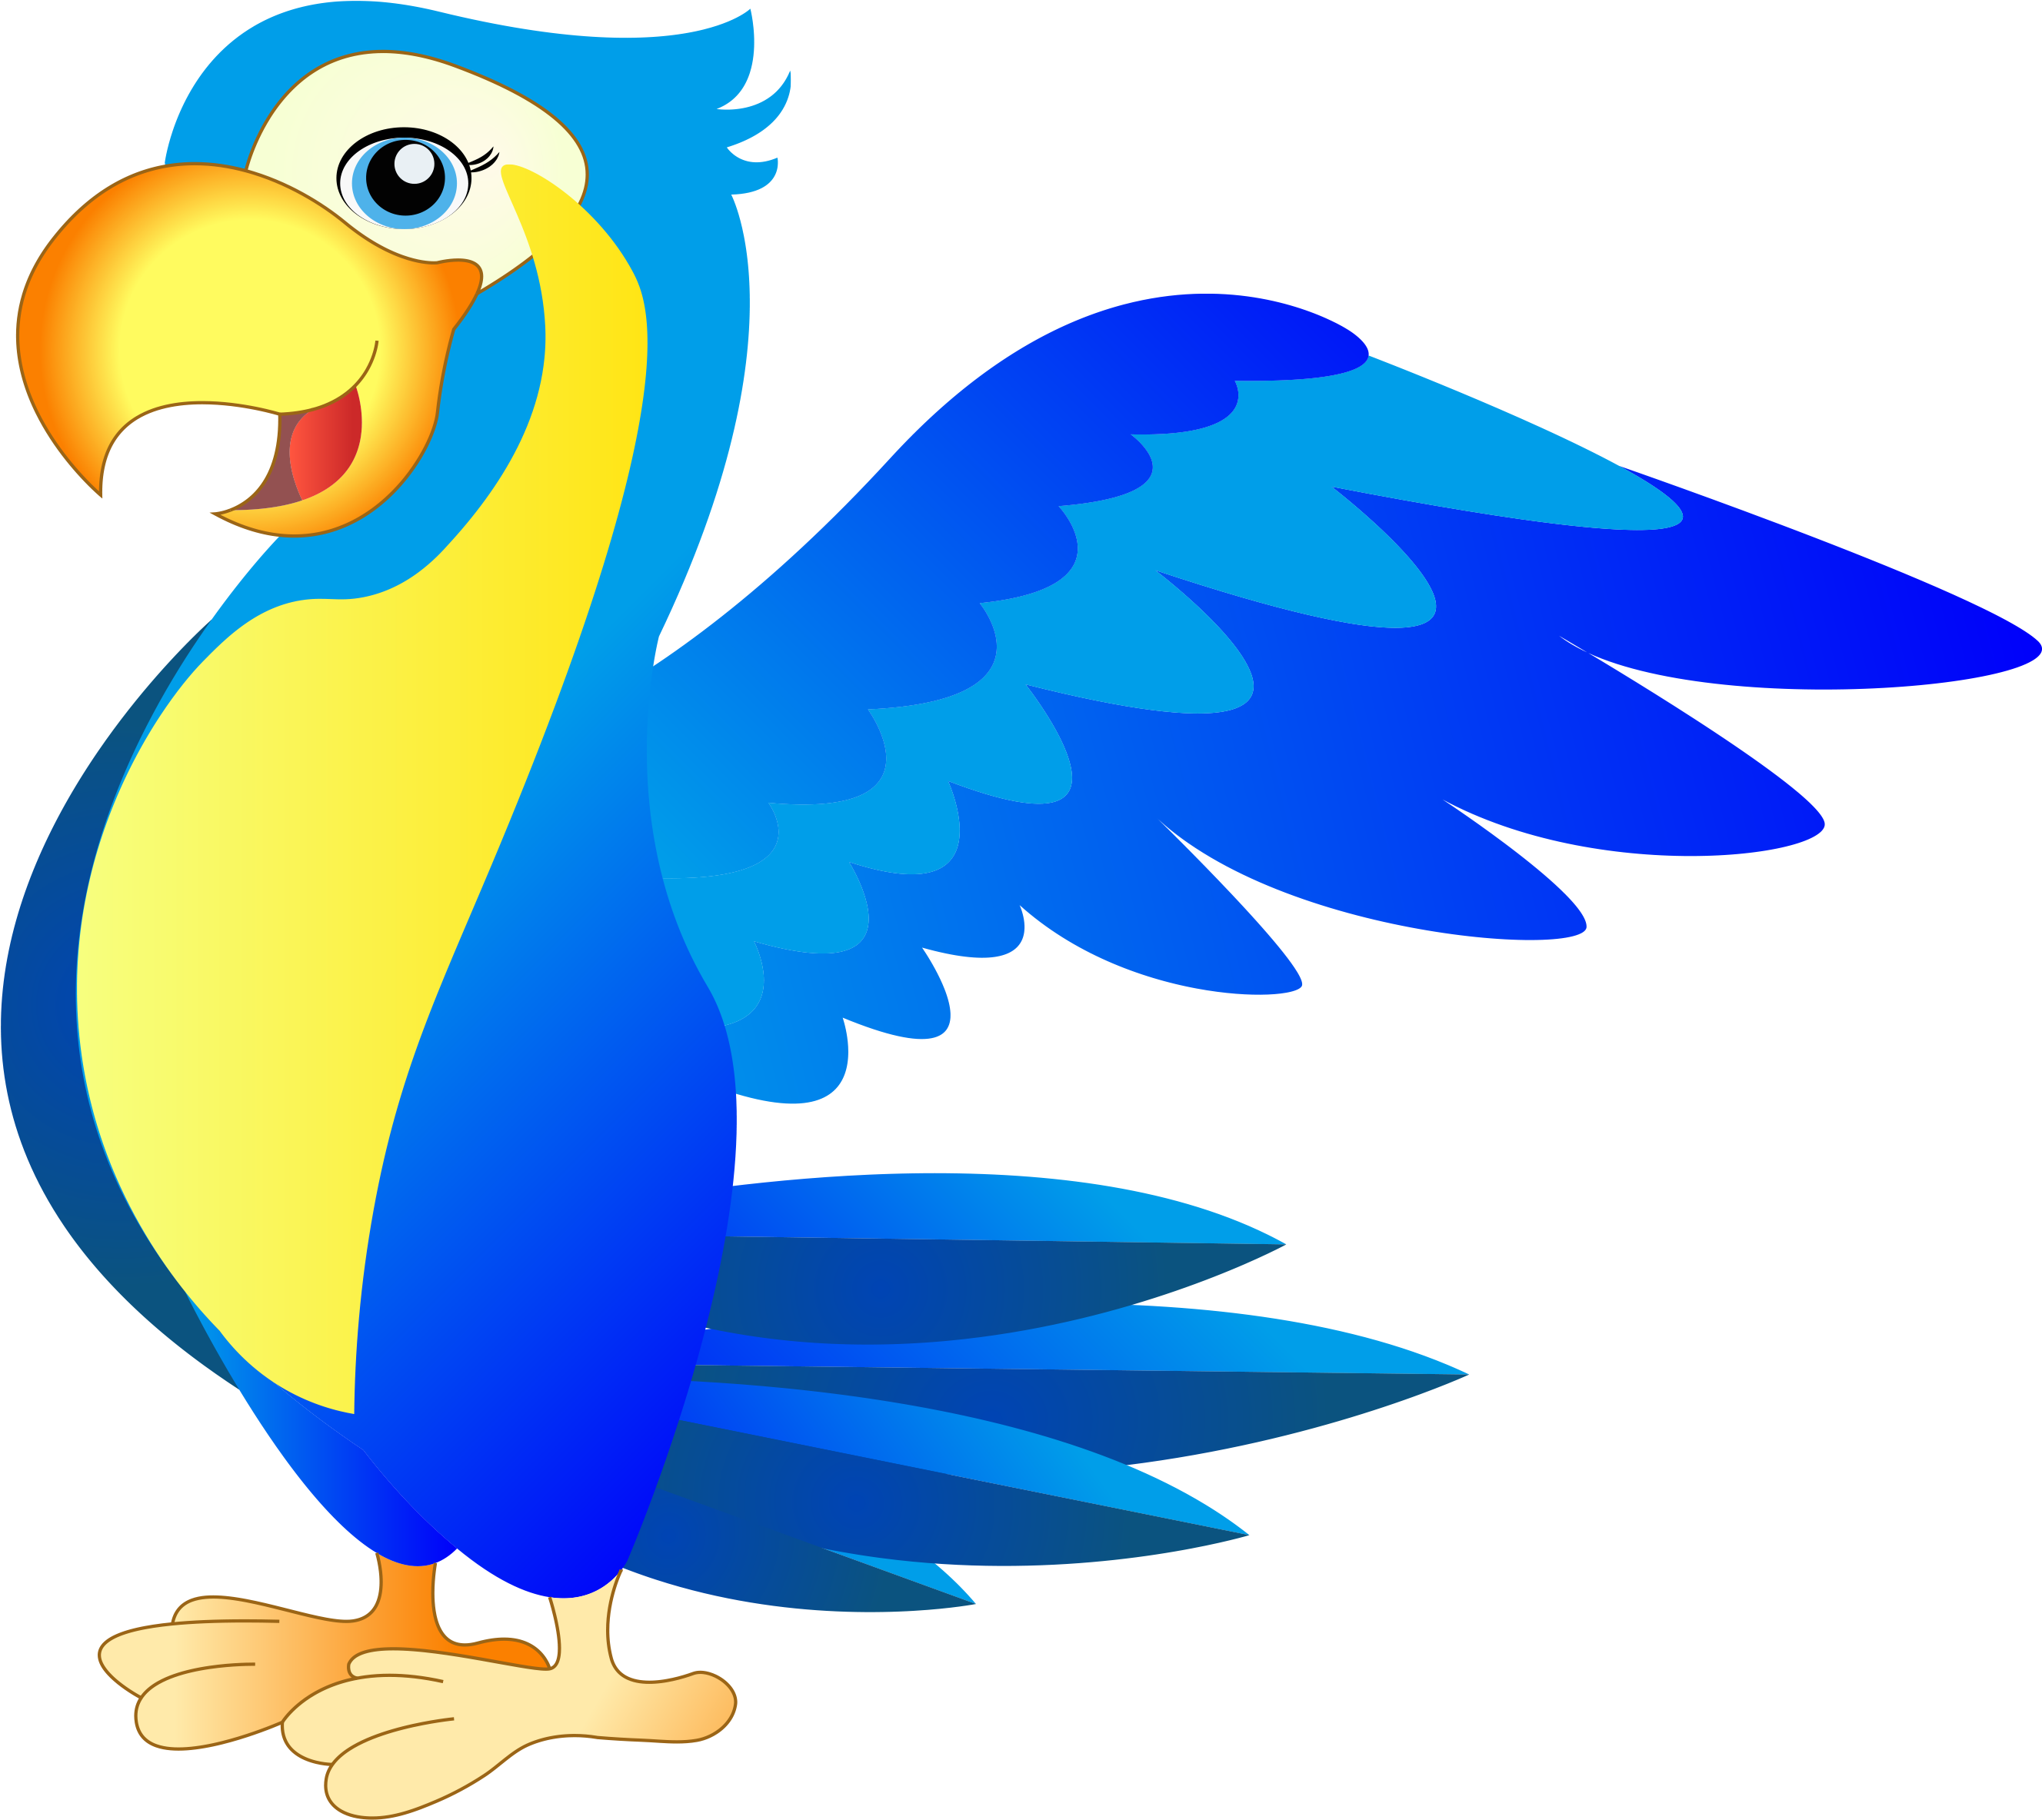 This - Parakeet (2891x2415)